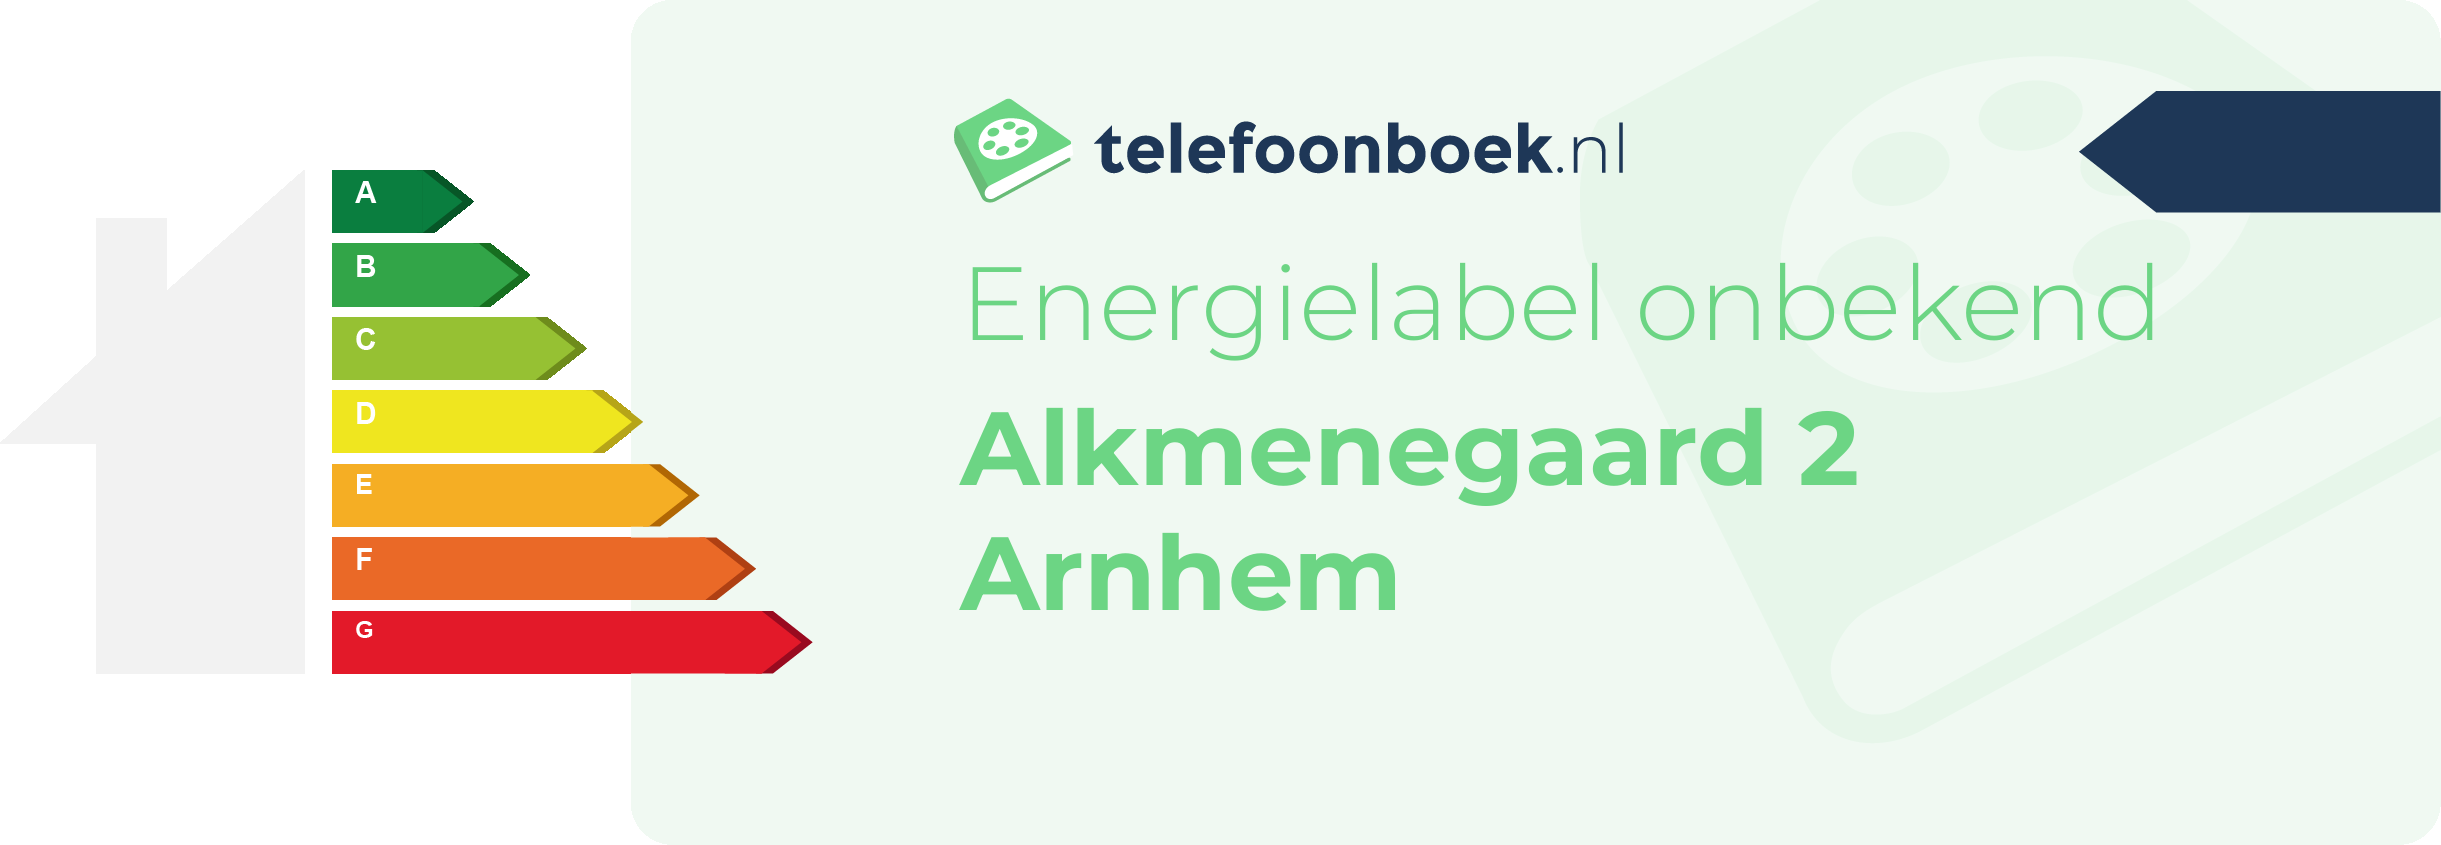 Energielabel Alkmenegaard 2 Arnhem